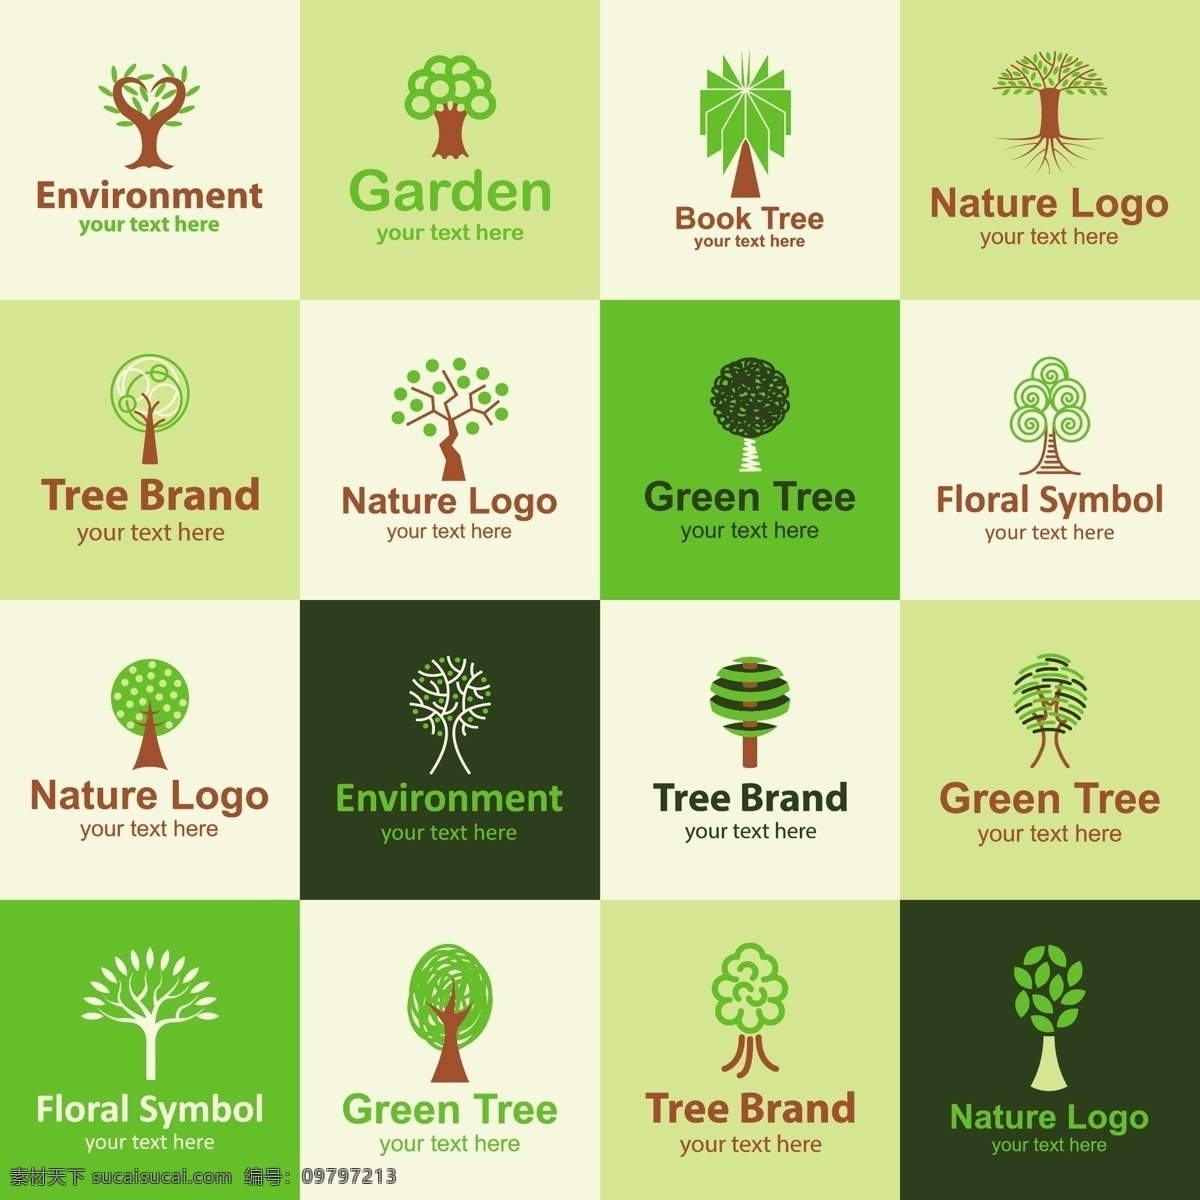 logo 图形 矢量 eps格式 标志设计 环保logo 卡通树 企业商标 商标设计 矢量图标 树木 创意 其他矢量图